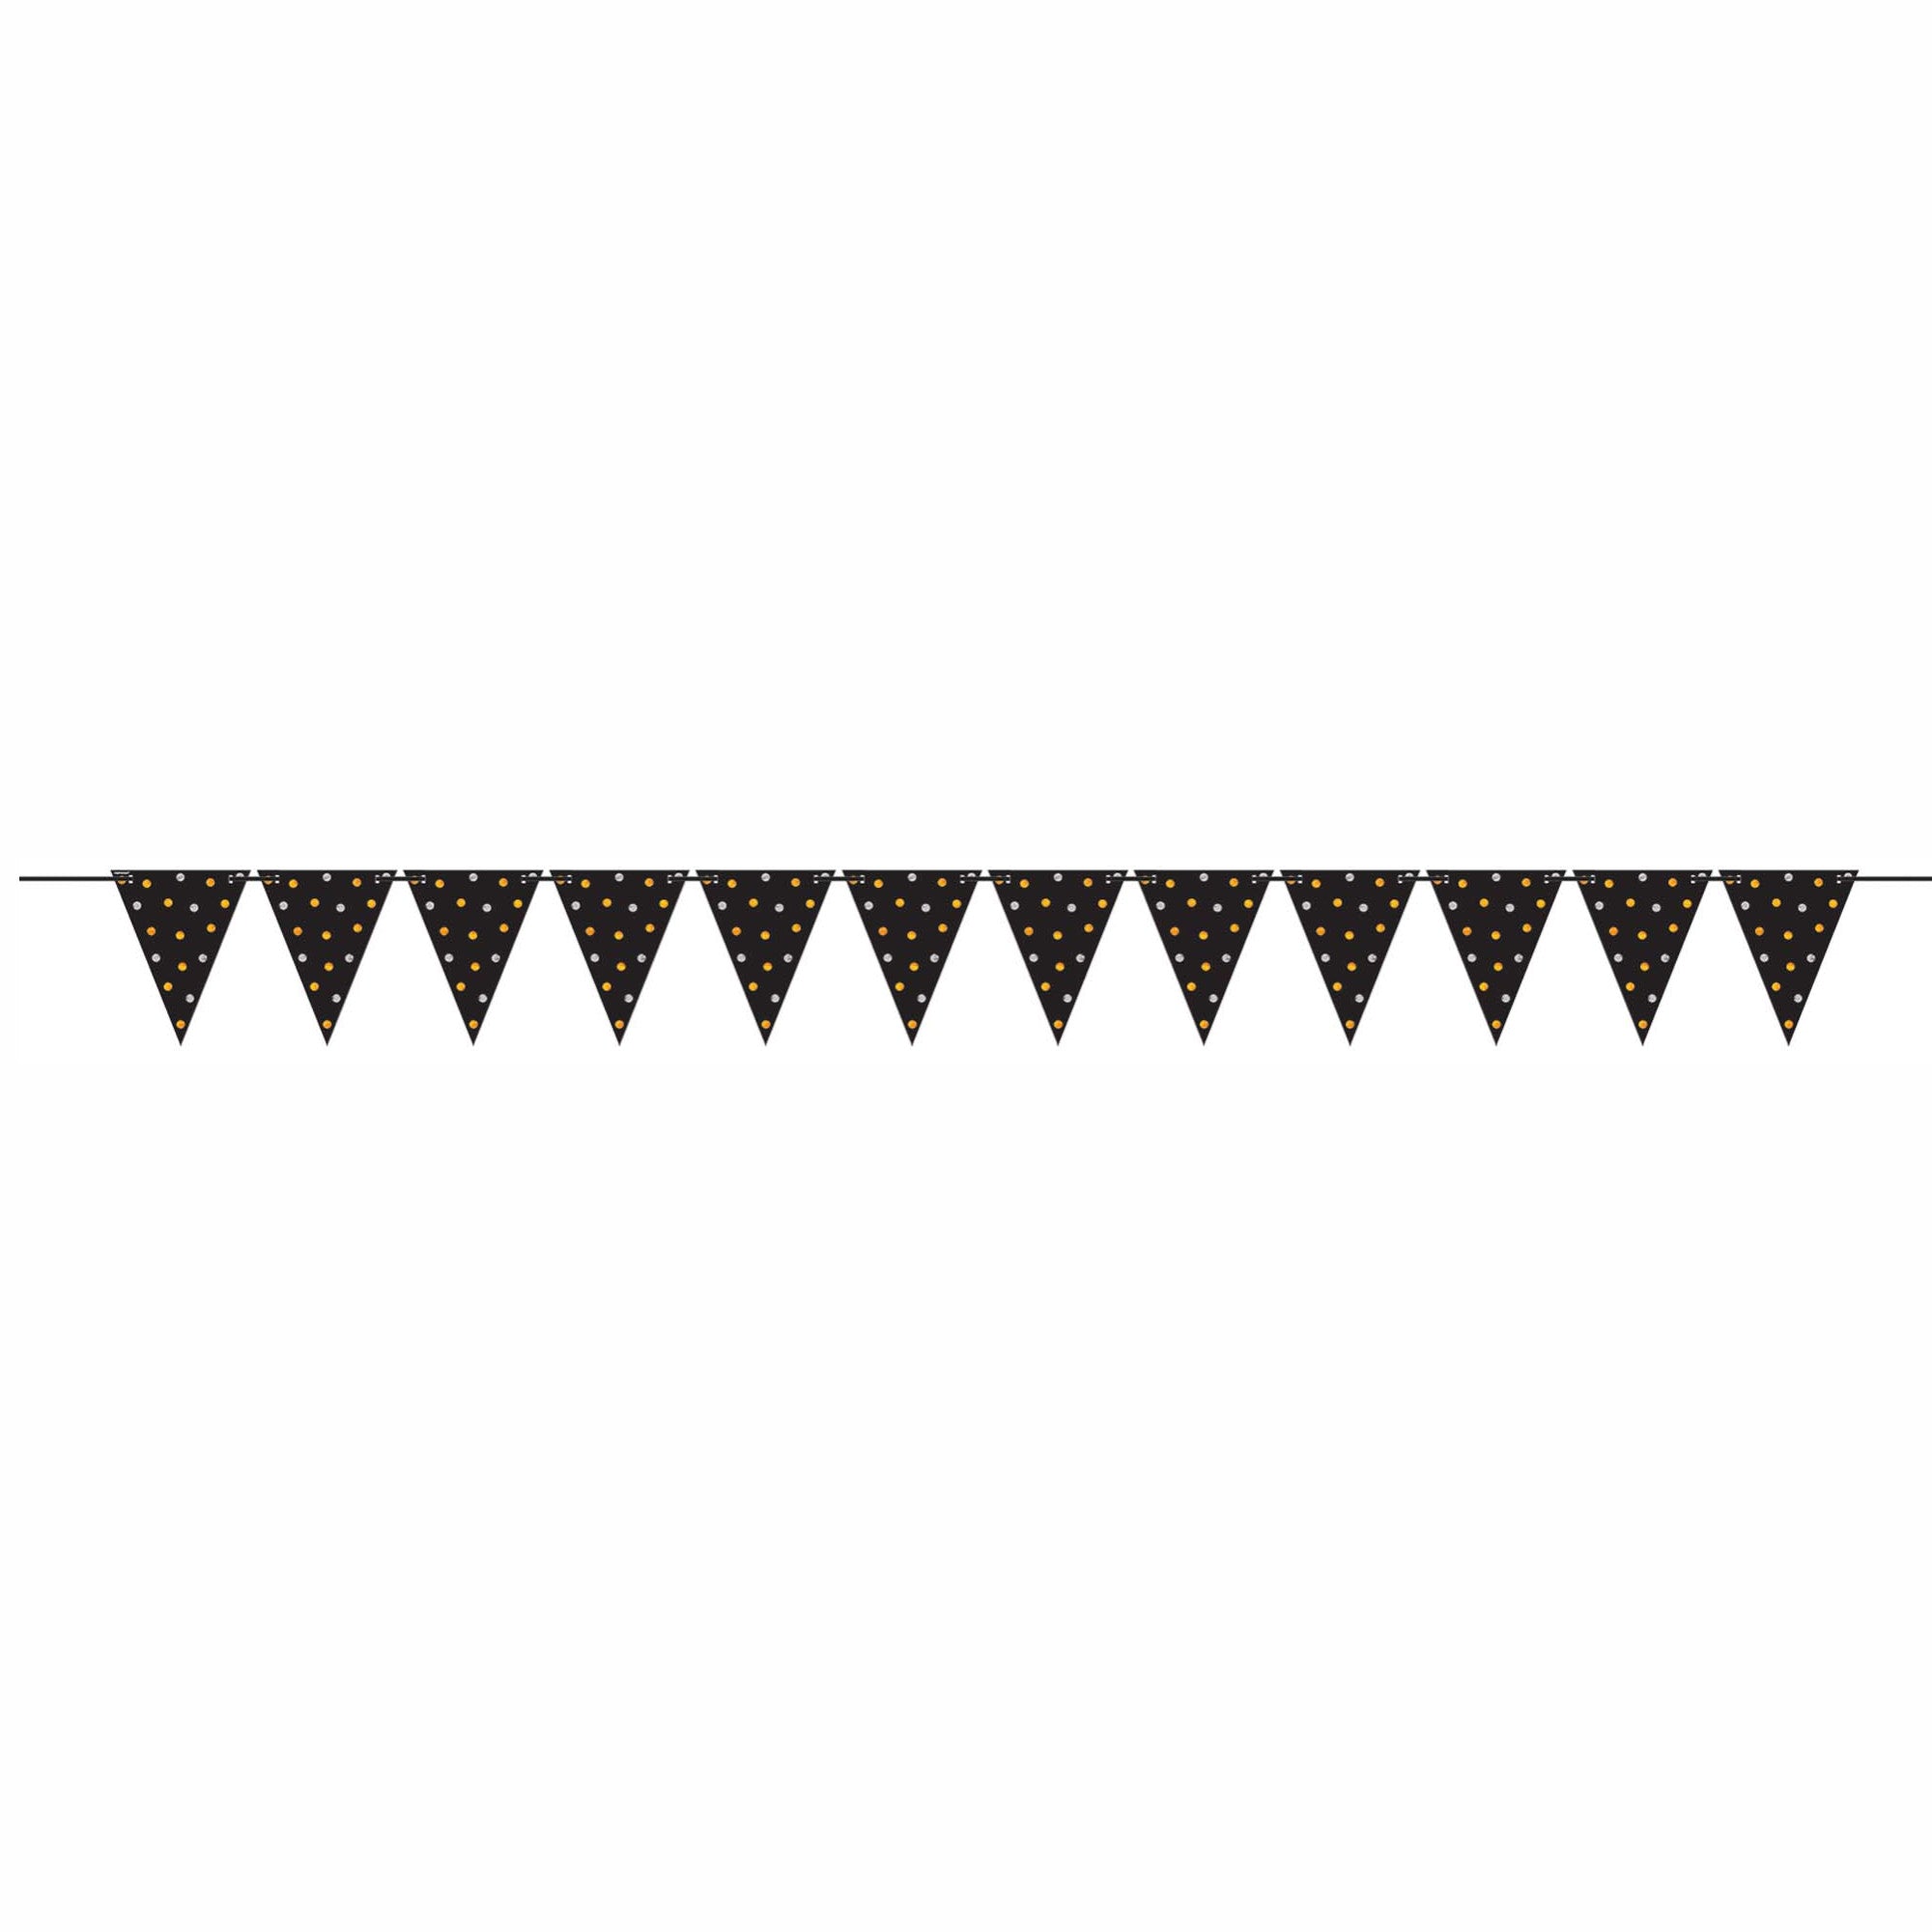 لافتة زينة بأعلام مثلثية ورقية مقاس صغير بلون أسود ميتاليك خليط - Party Centre